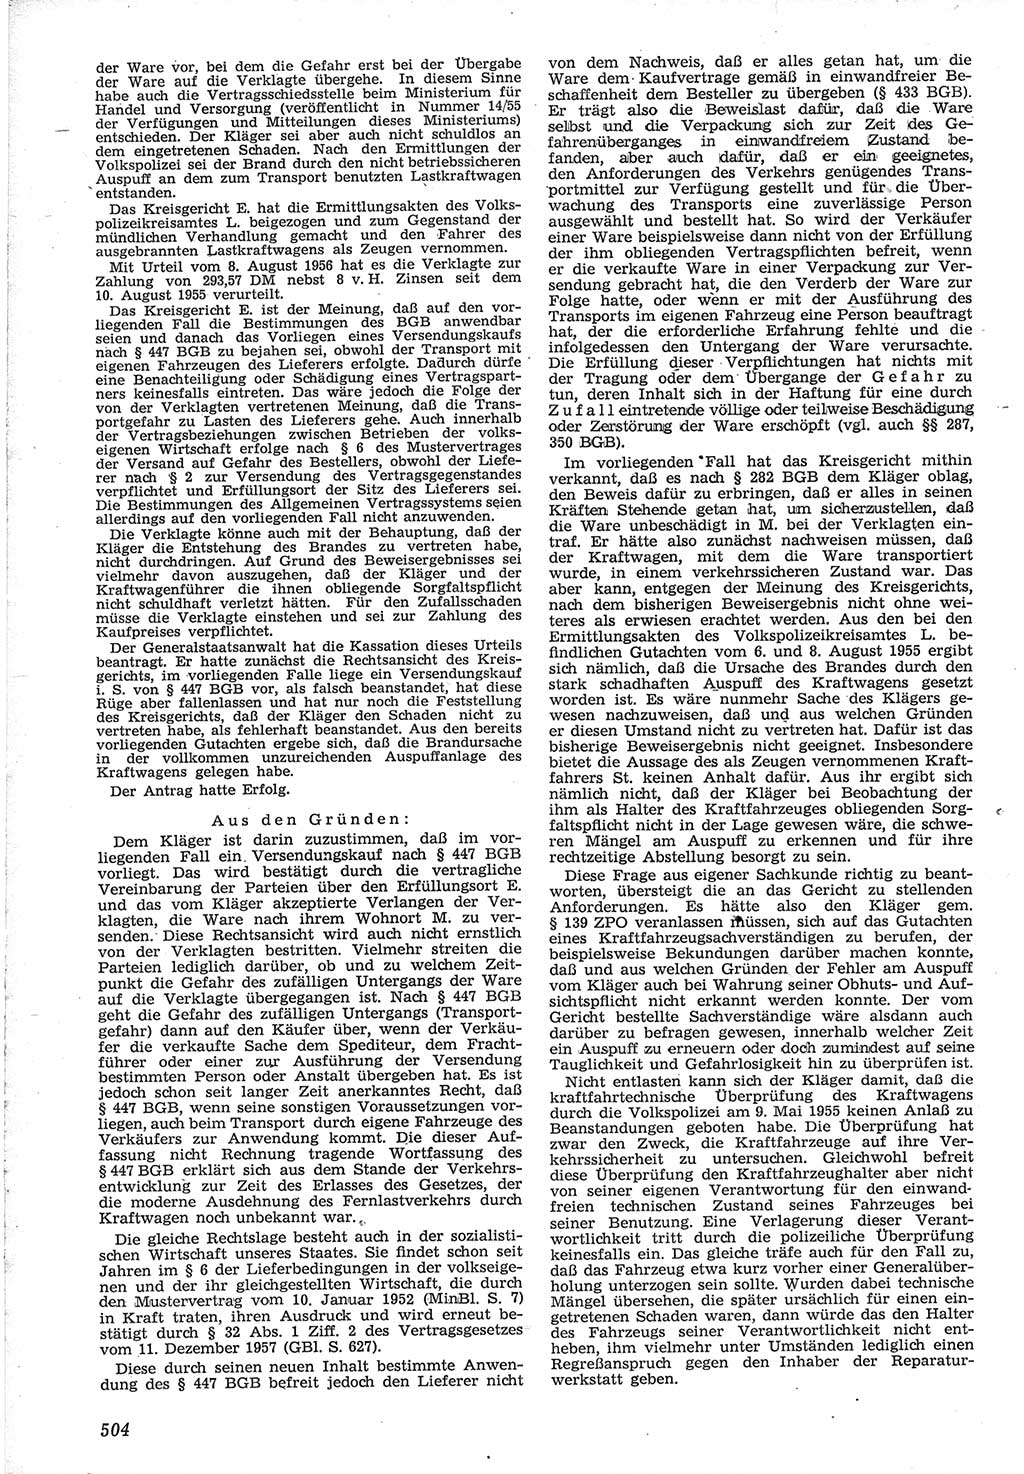 Neue Justiz (NJ), Zeitschrift für Recht und Rechtswissenschaft [Deutsche Demokratische Republik (DDR)], 12. Jahrgang 1958, Seite 504 (NJ DDR 1958, S. 504)